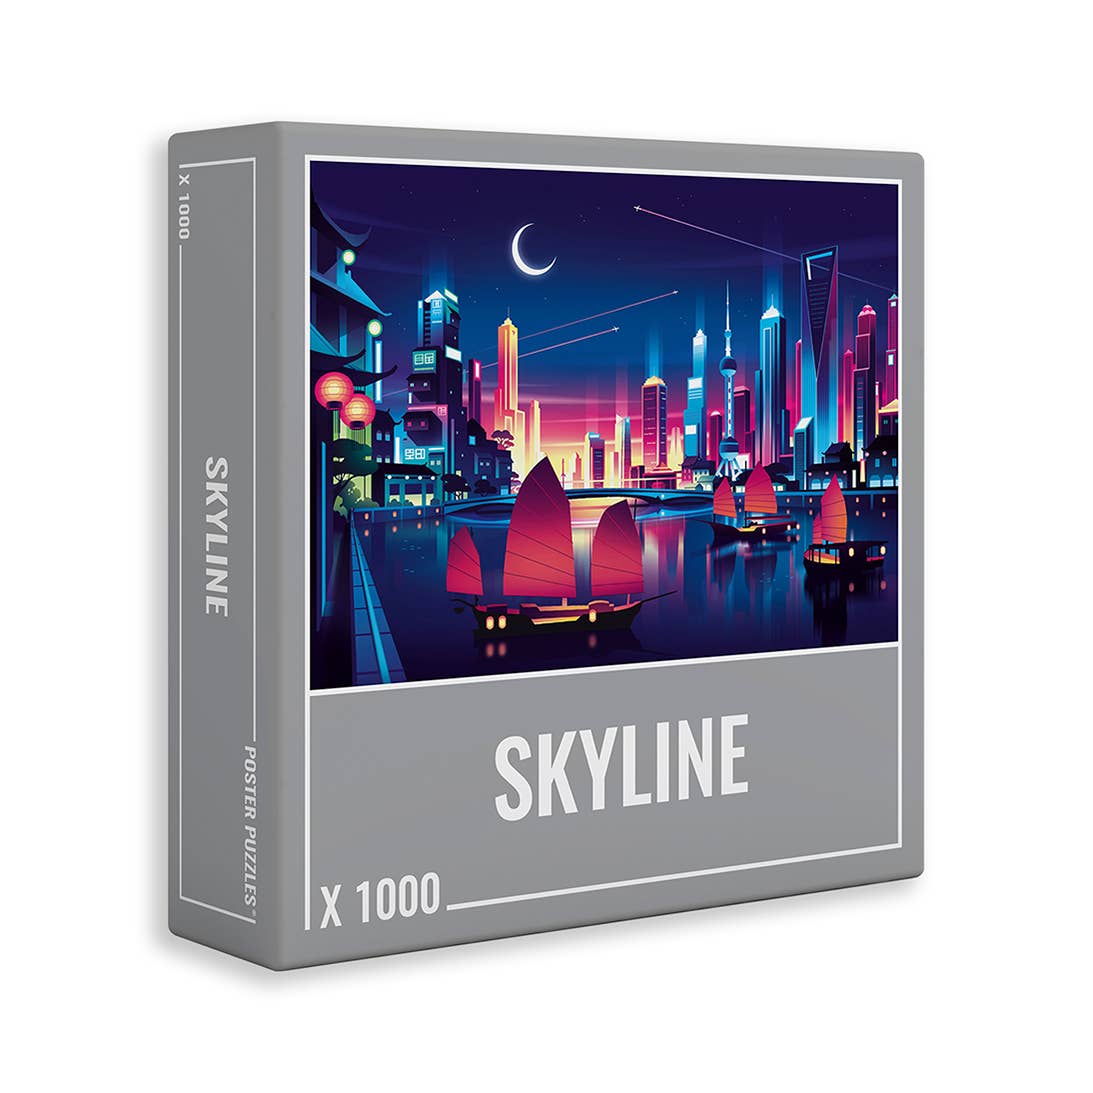 Skyline | 1,000 Piece Jigsaw Puzzle